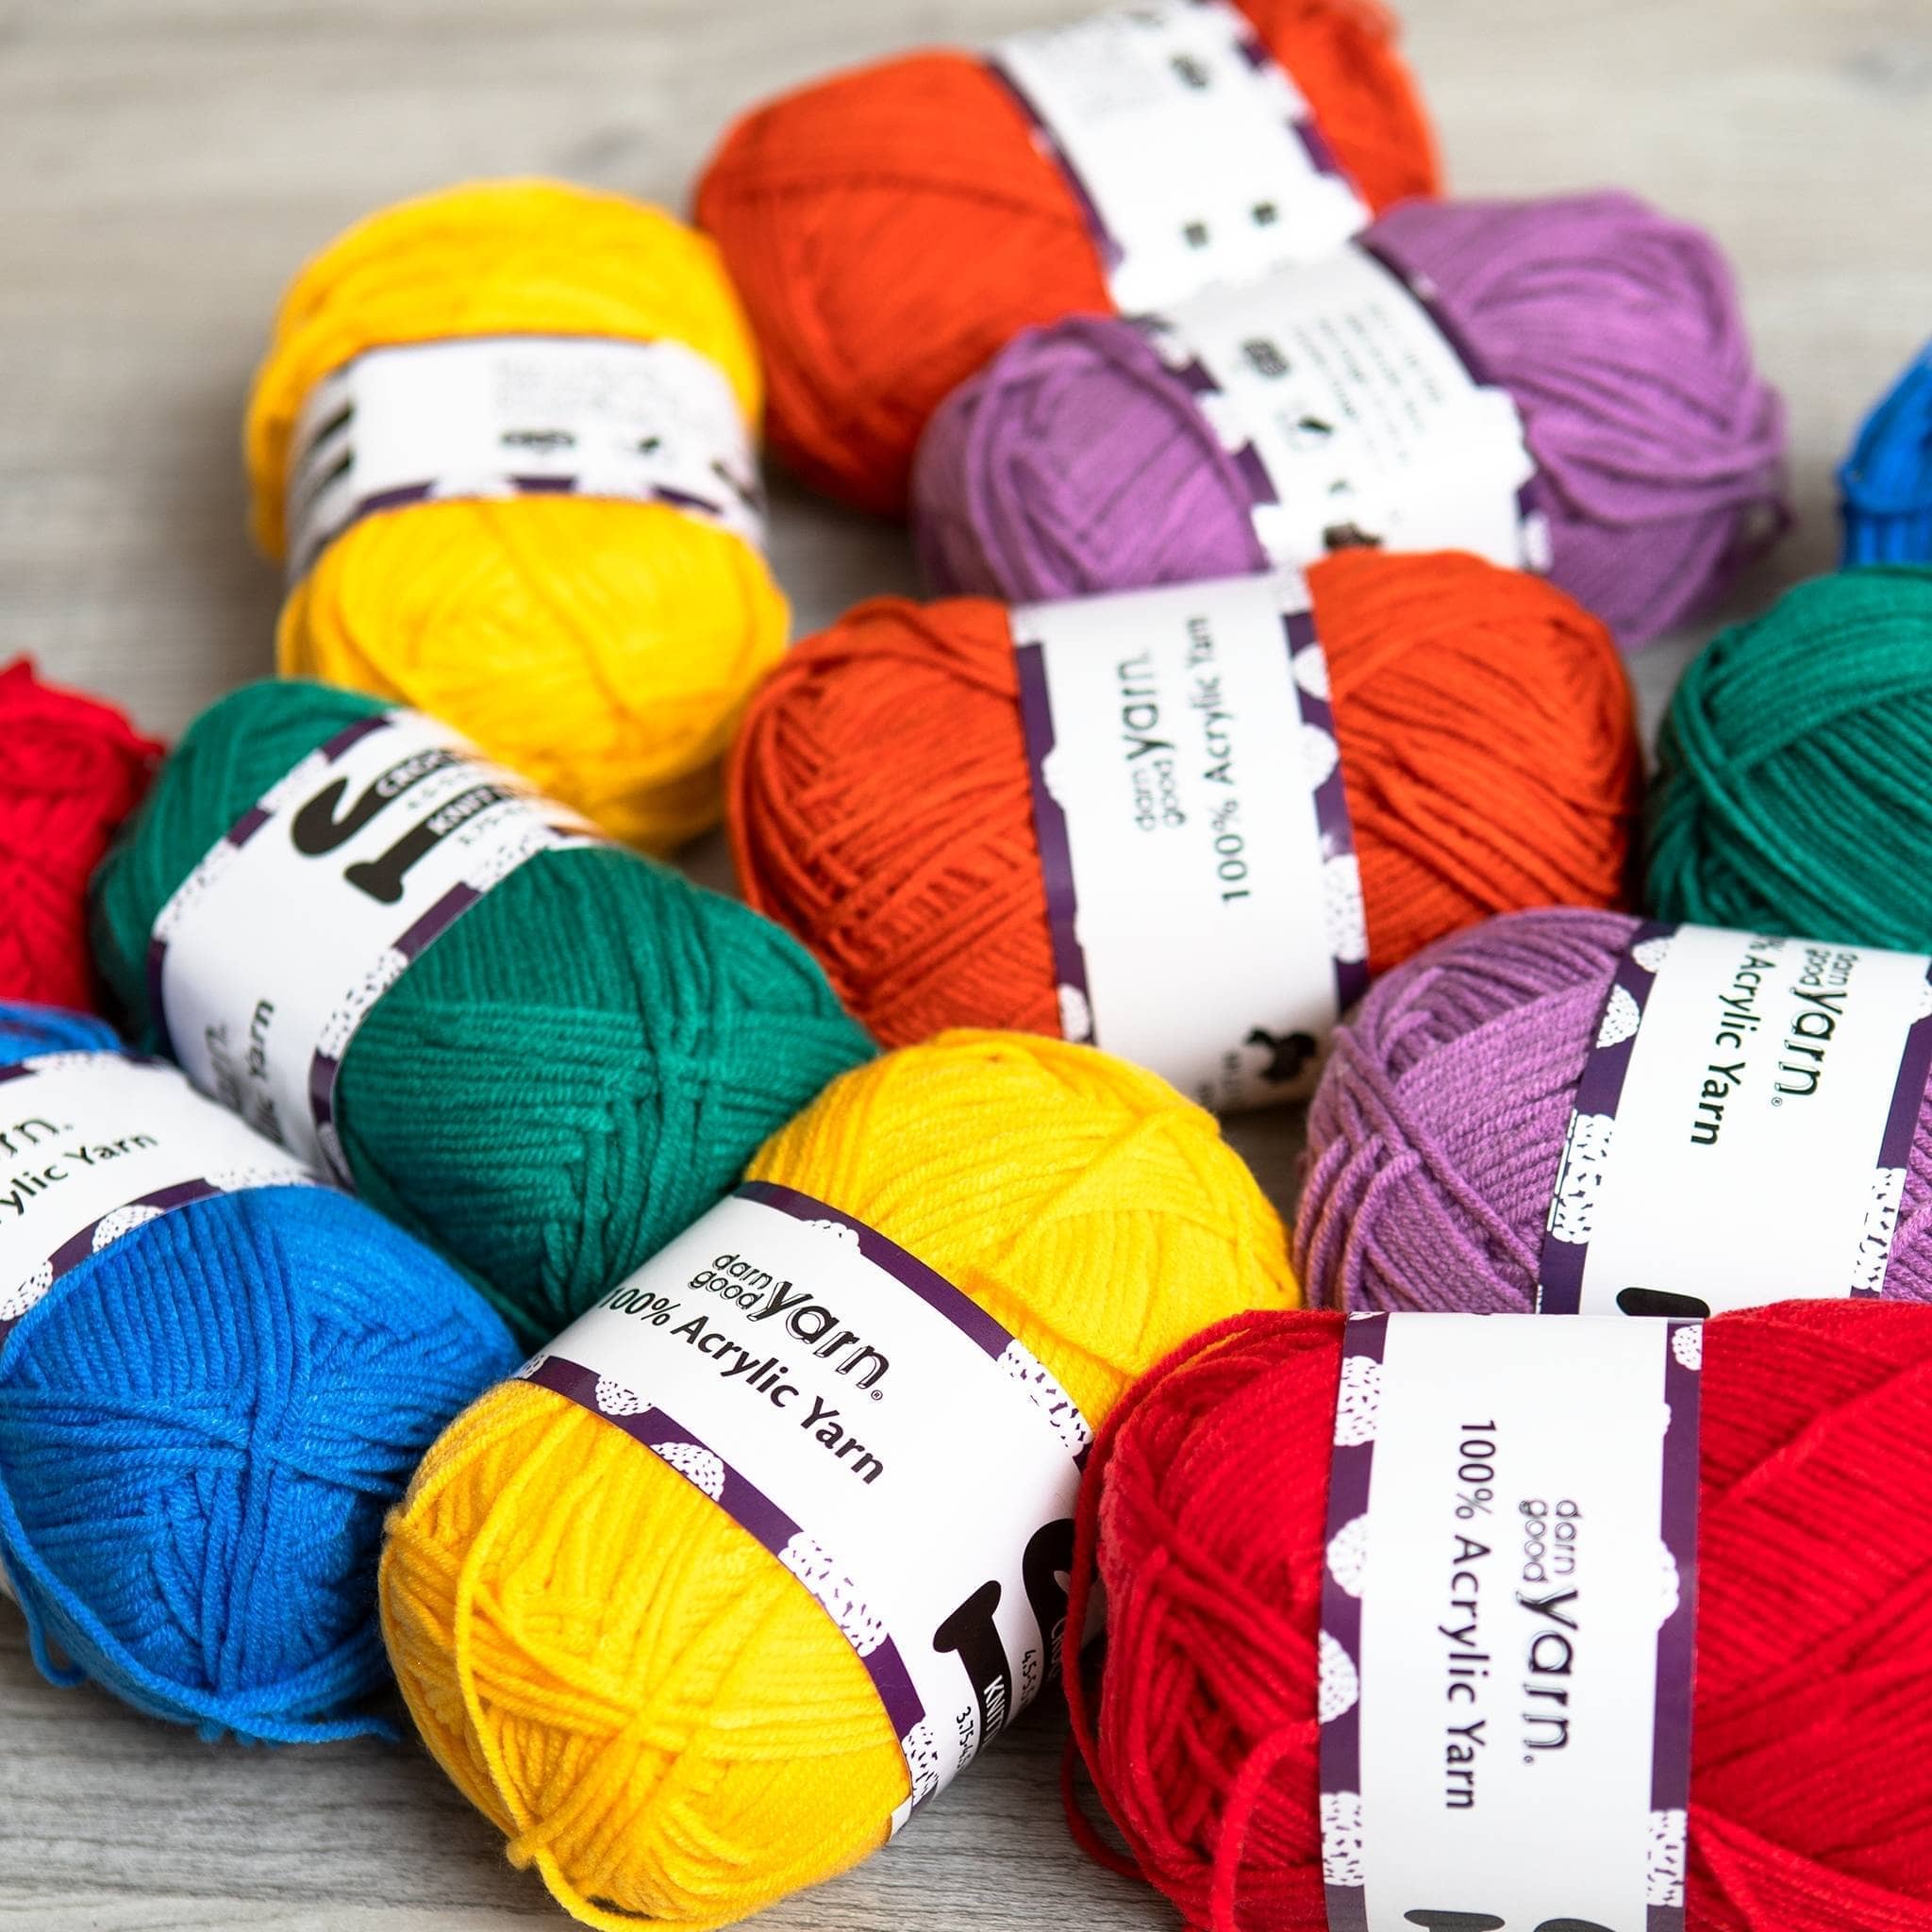  Darn Good Yarn - Kit de ganchillo para principiantes a  intermedios  Sandía DIY Crochet Amigurumi - El kit de ganchillo incluye  patrón, hilo, gancho de ganchillo, relleno y agujas de